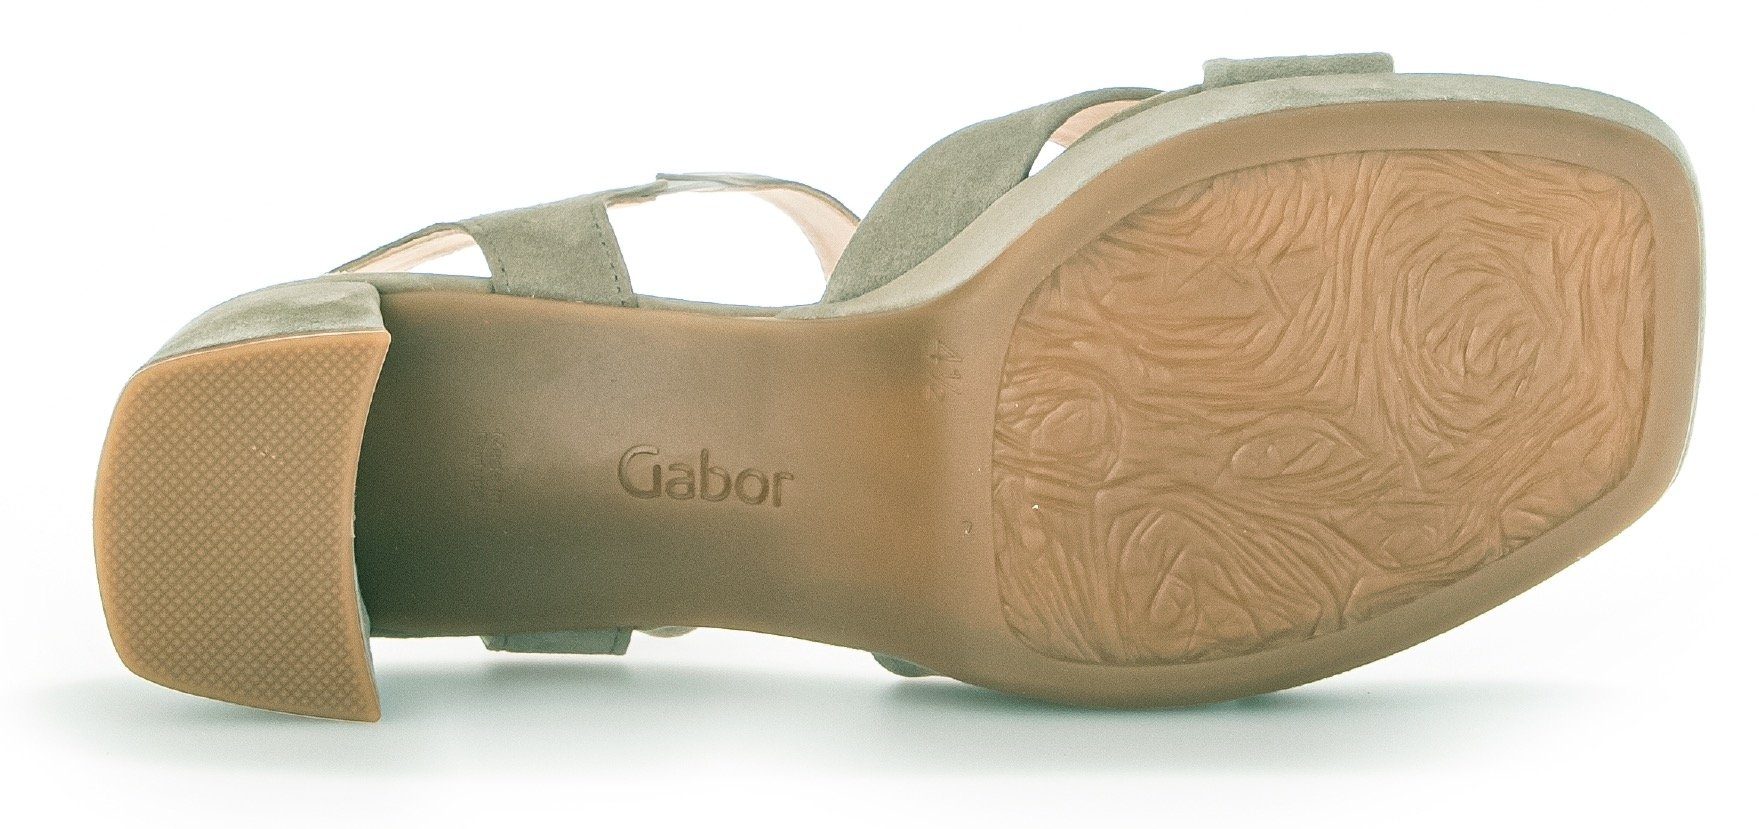 Gabor Sandalette mit G Kreuzbandage, Weite hellgrün